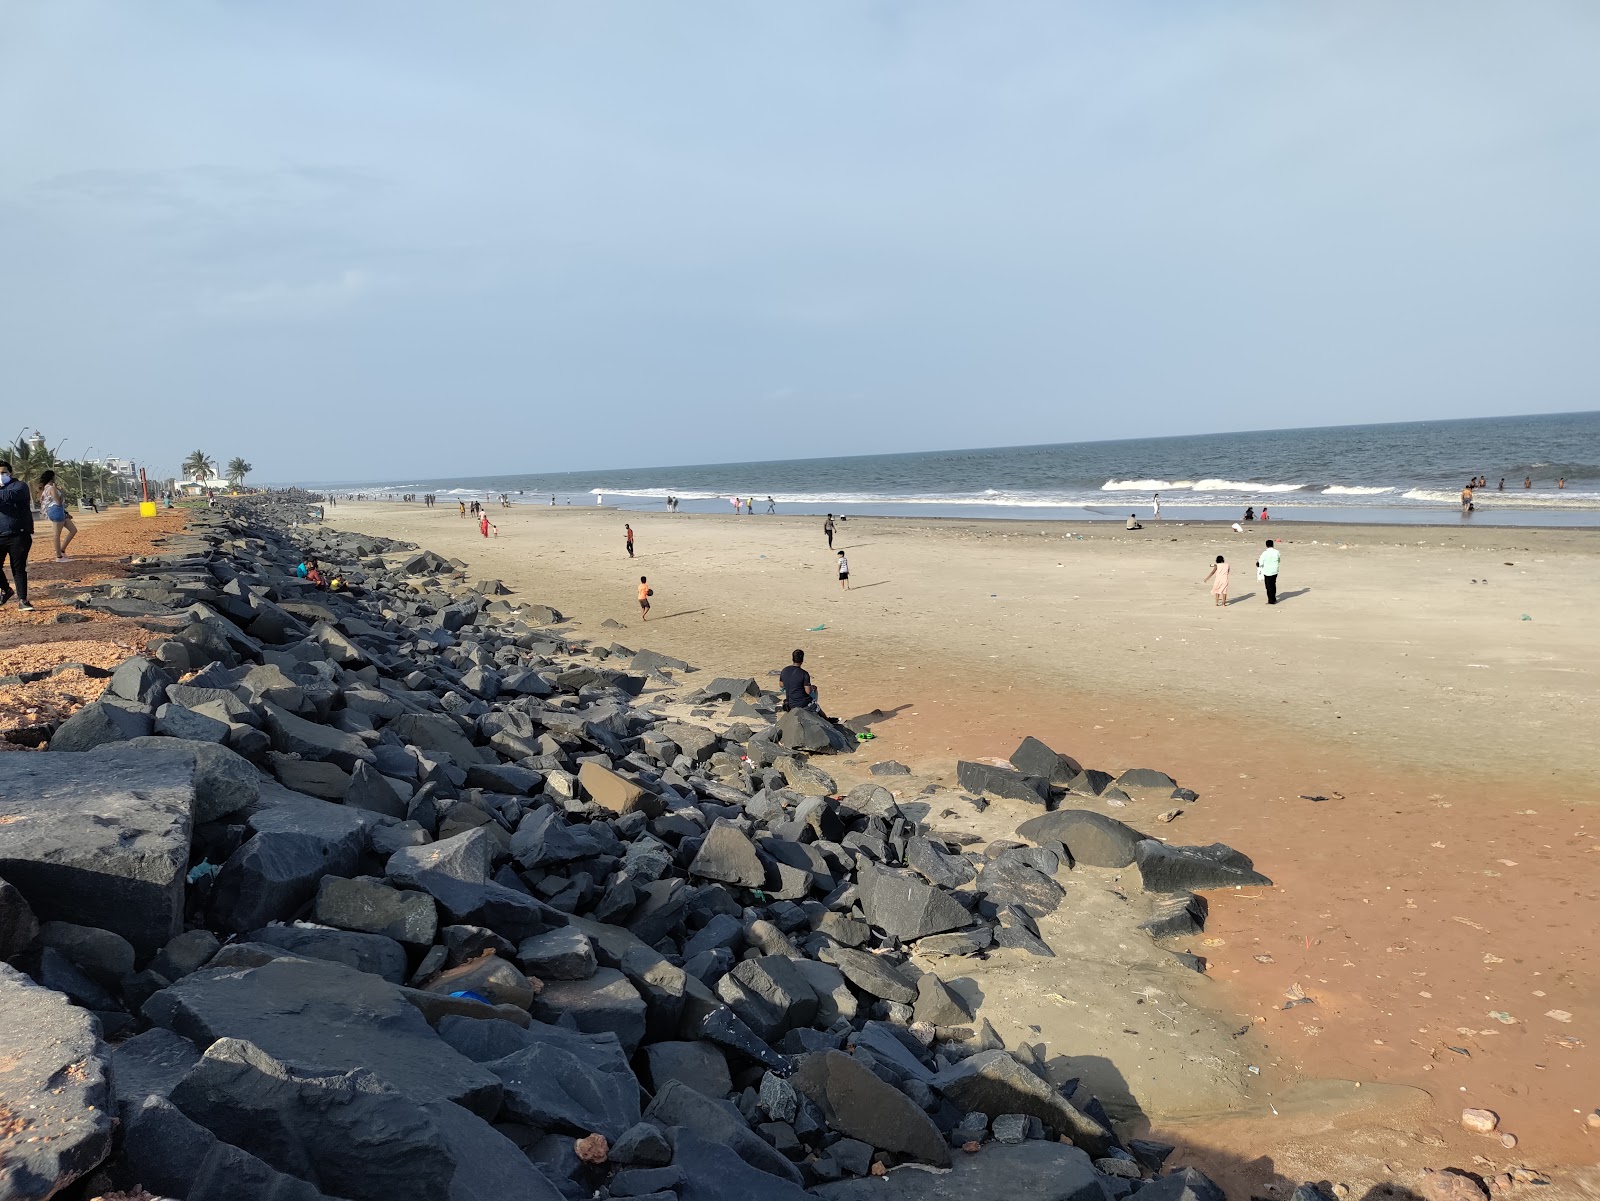 Pondicherry Beach'in fotoğrafı parlak kum yüzey ile